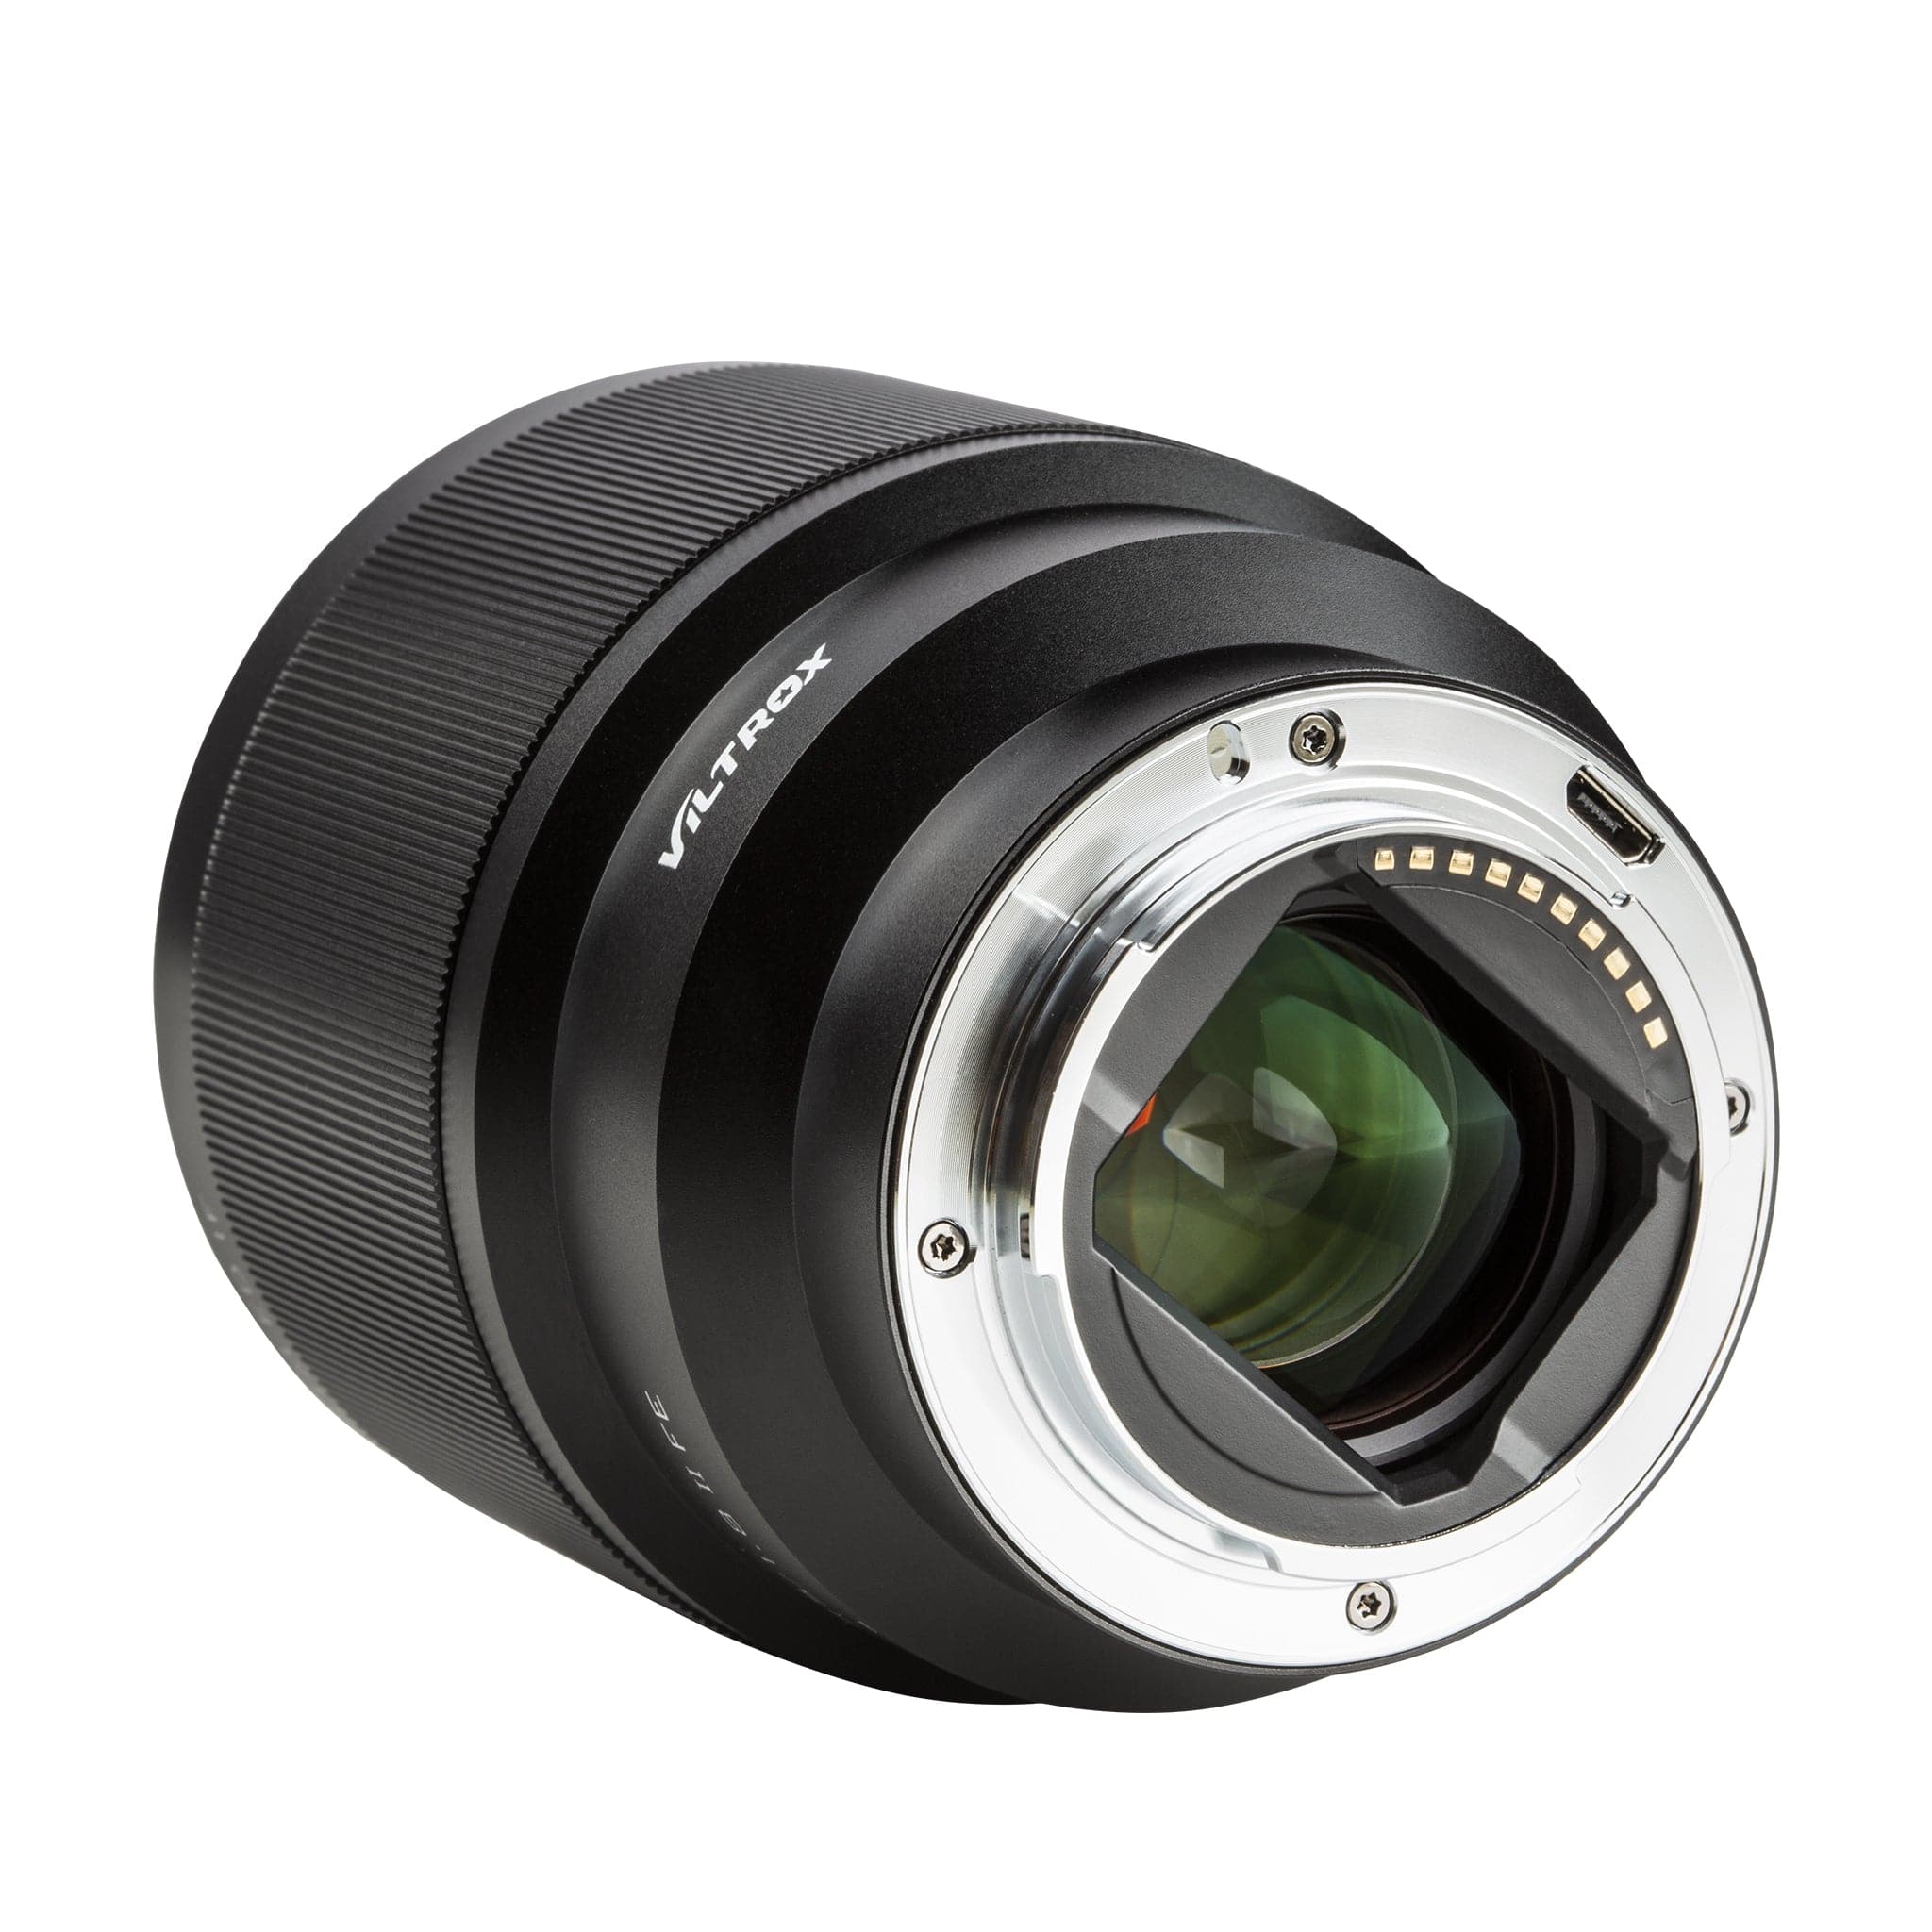 Viltrox 85mm f1.8 E-mount Sony Autofocus Prime Lens with Quality Lens